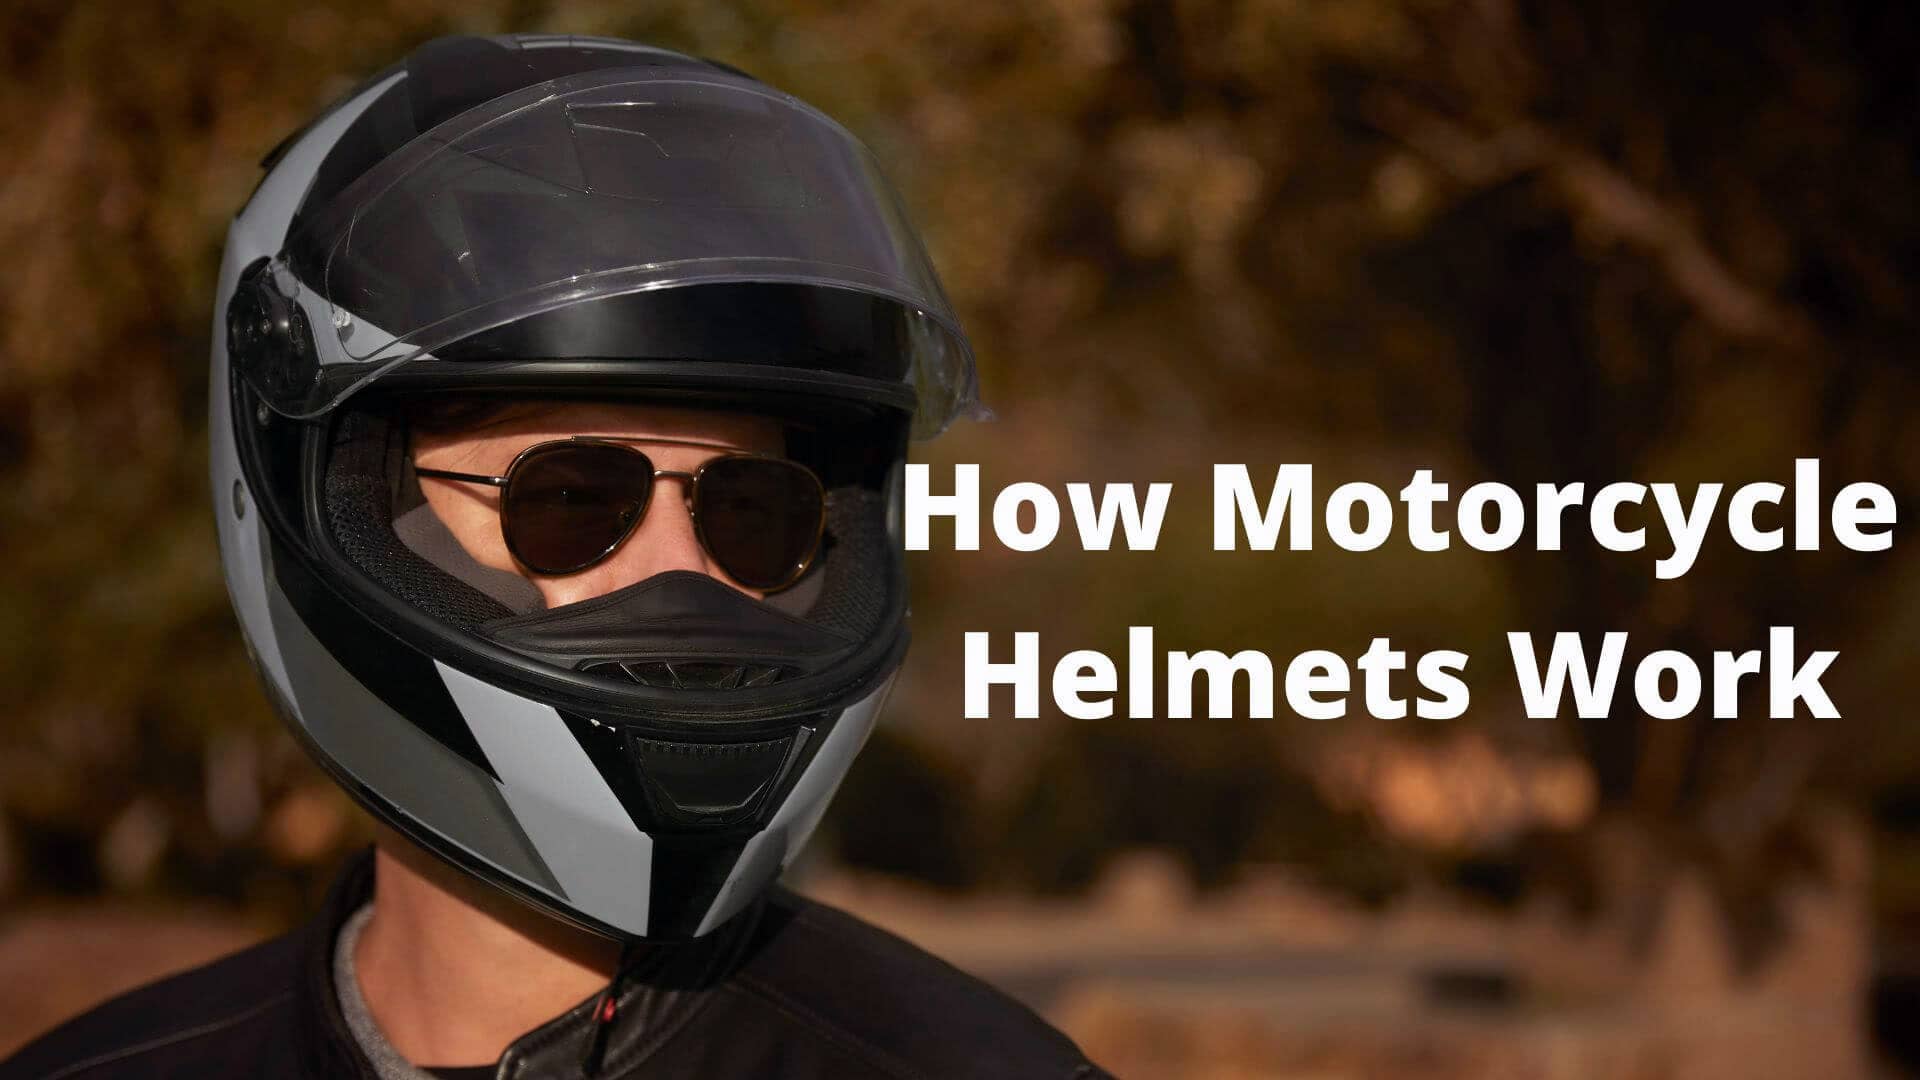 How Motorcycle Helmets Work?